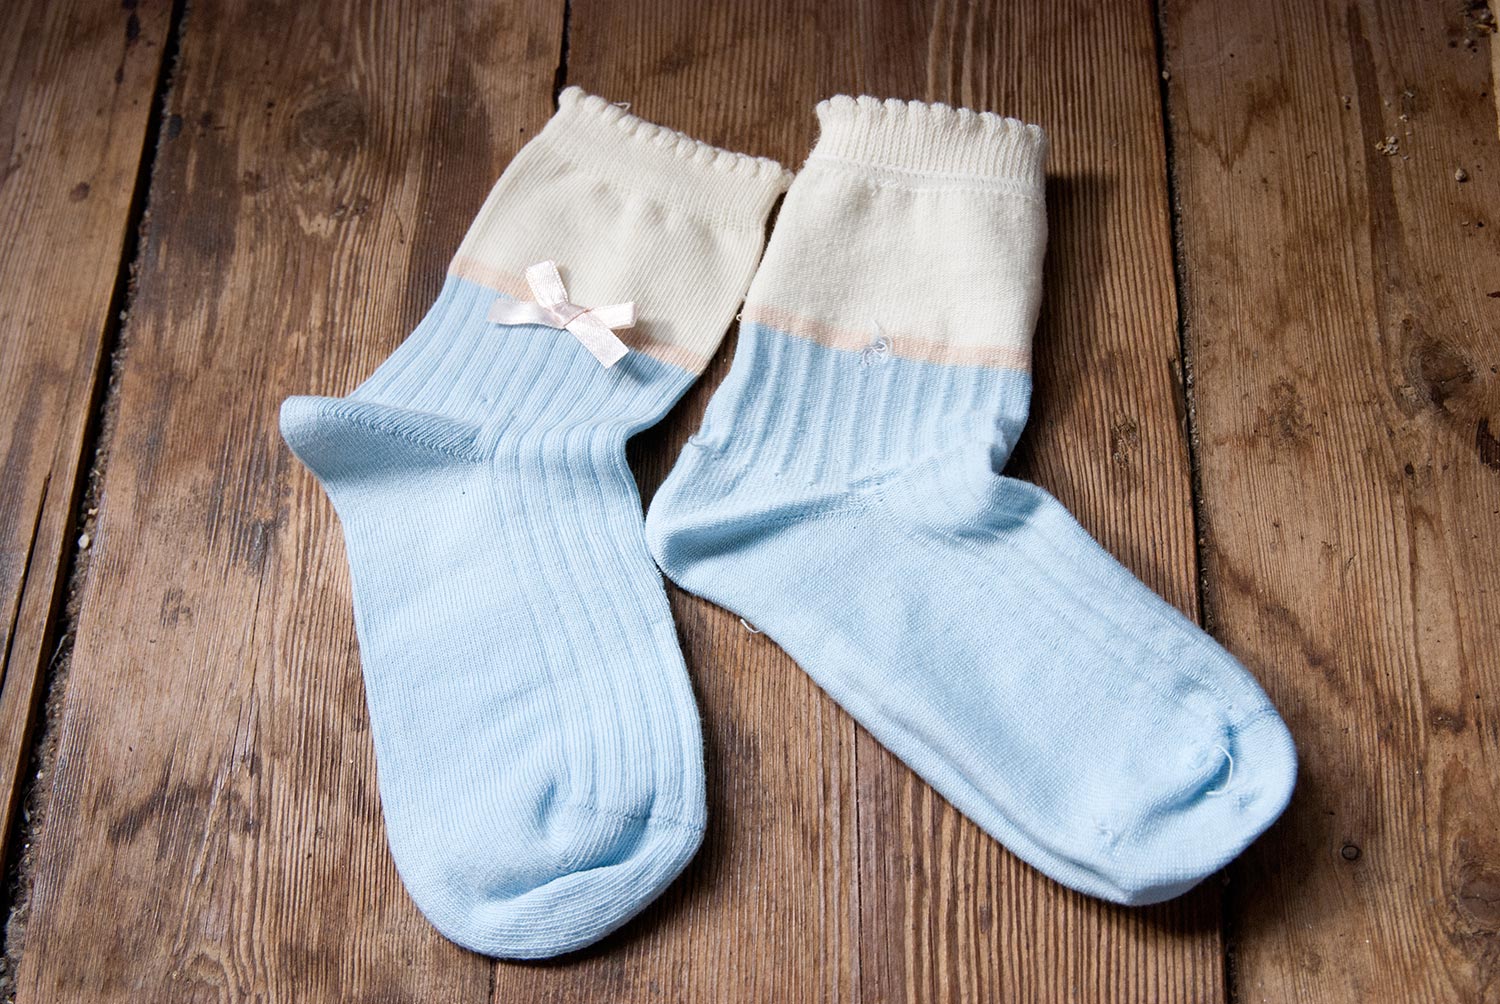 Детские носки с бантиками. Изображение: ©bracatuS